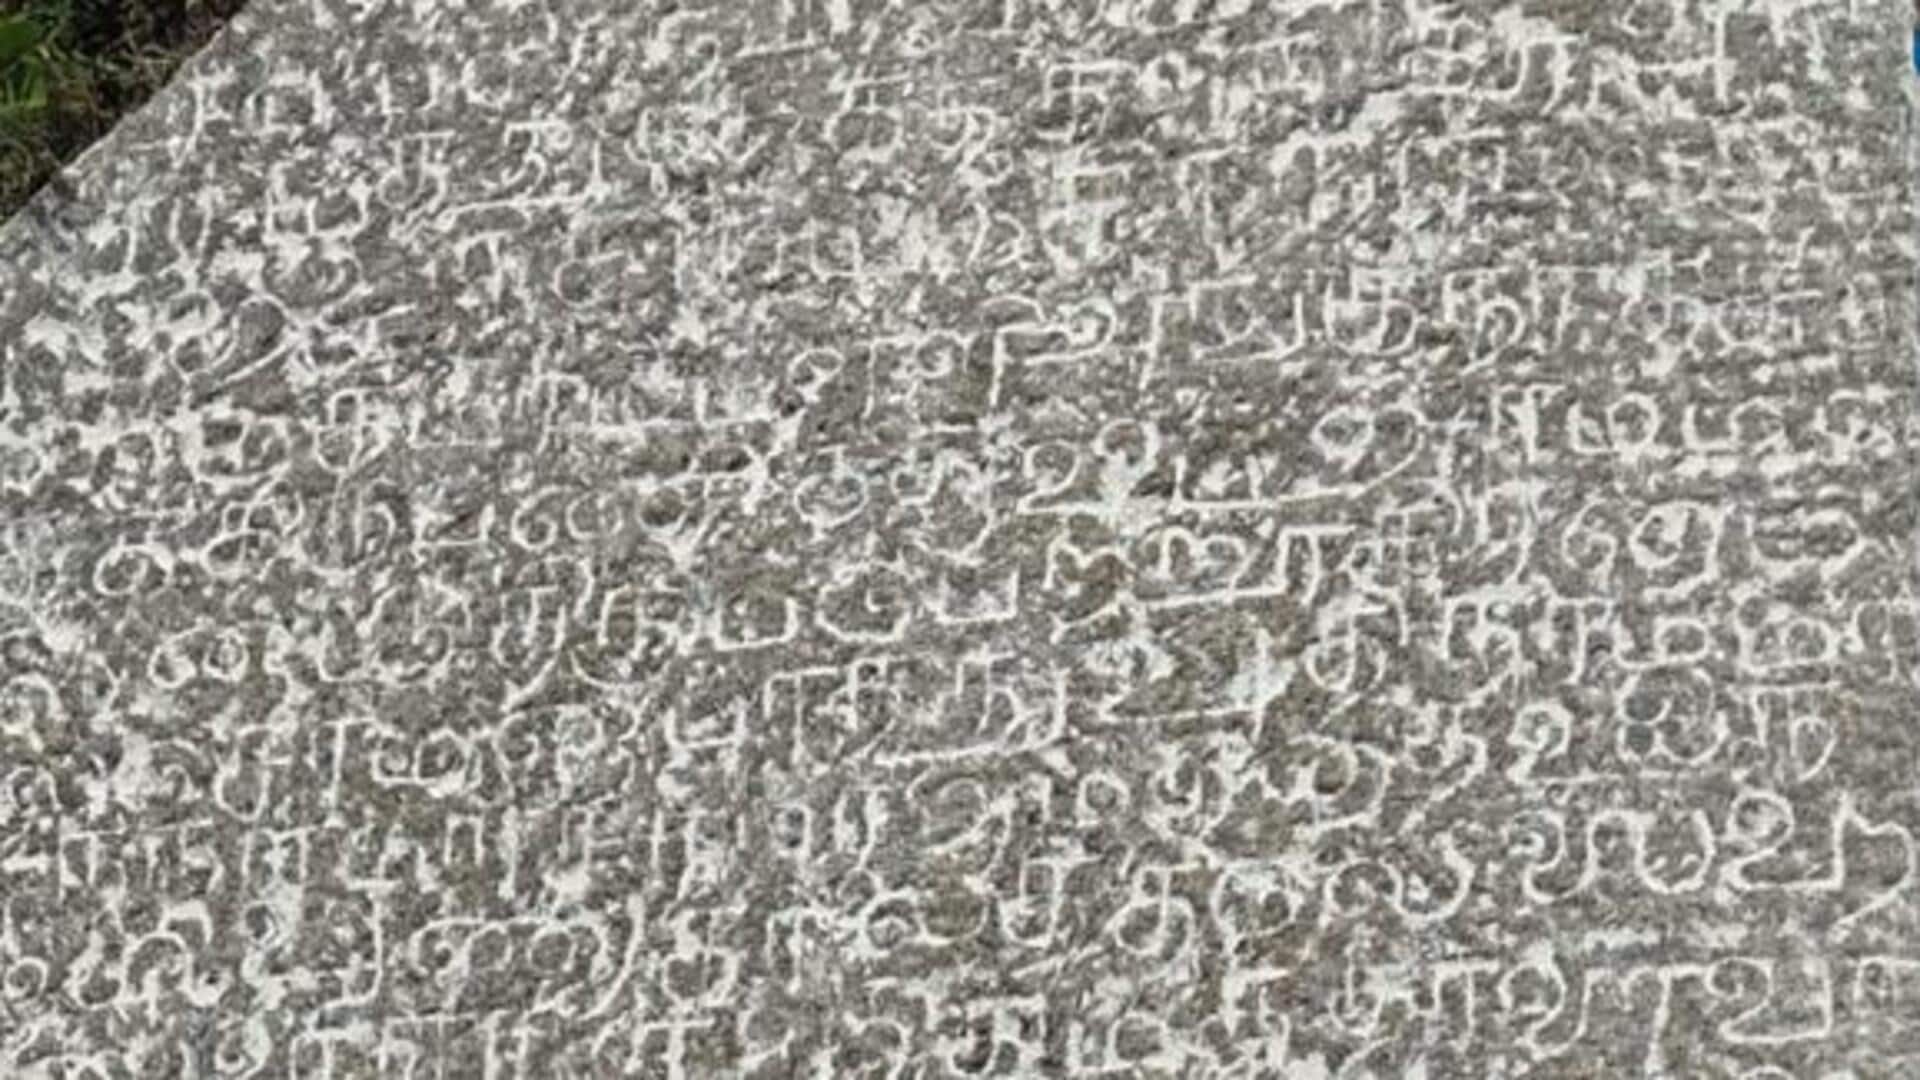 திருப்பத்தூரில் கண்டெடுக்கப்பட்ட 17ம் நூற்றாண்டின் நிலக்கொடை கல்வெட்டு